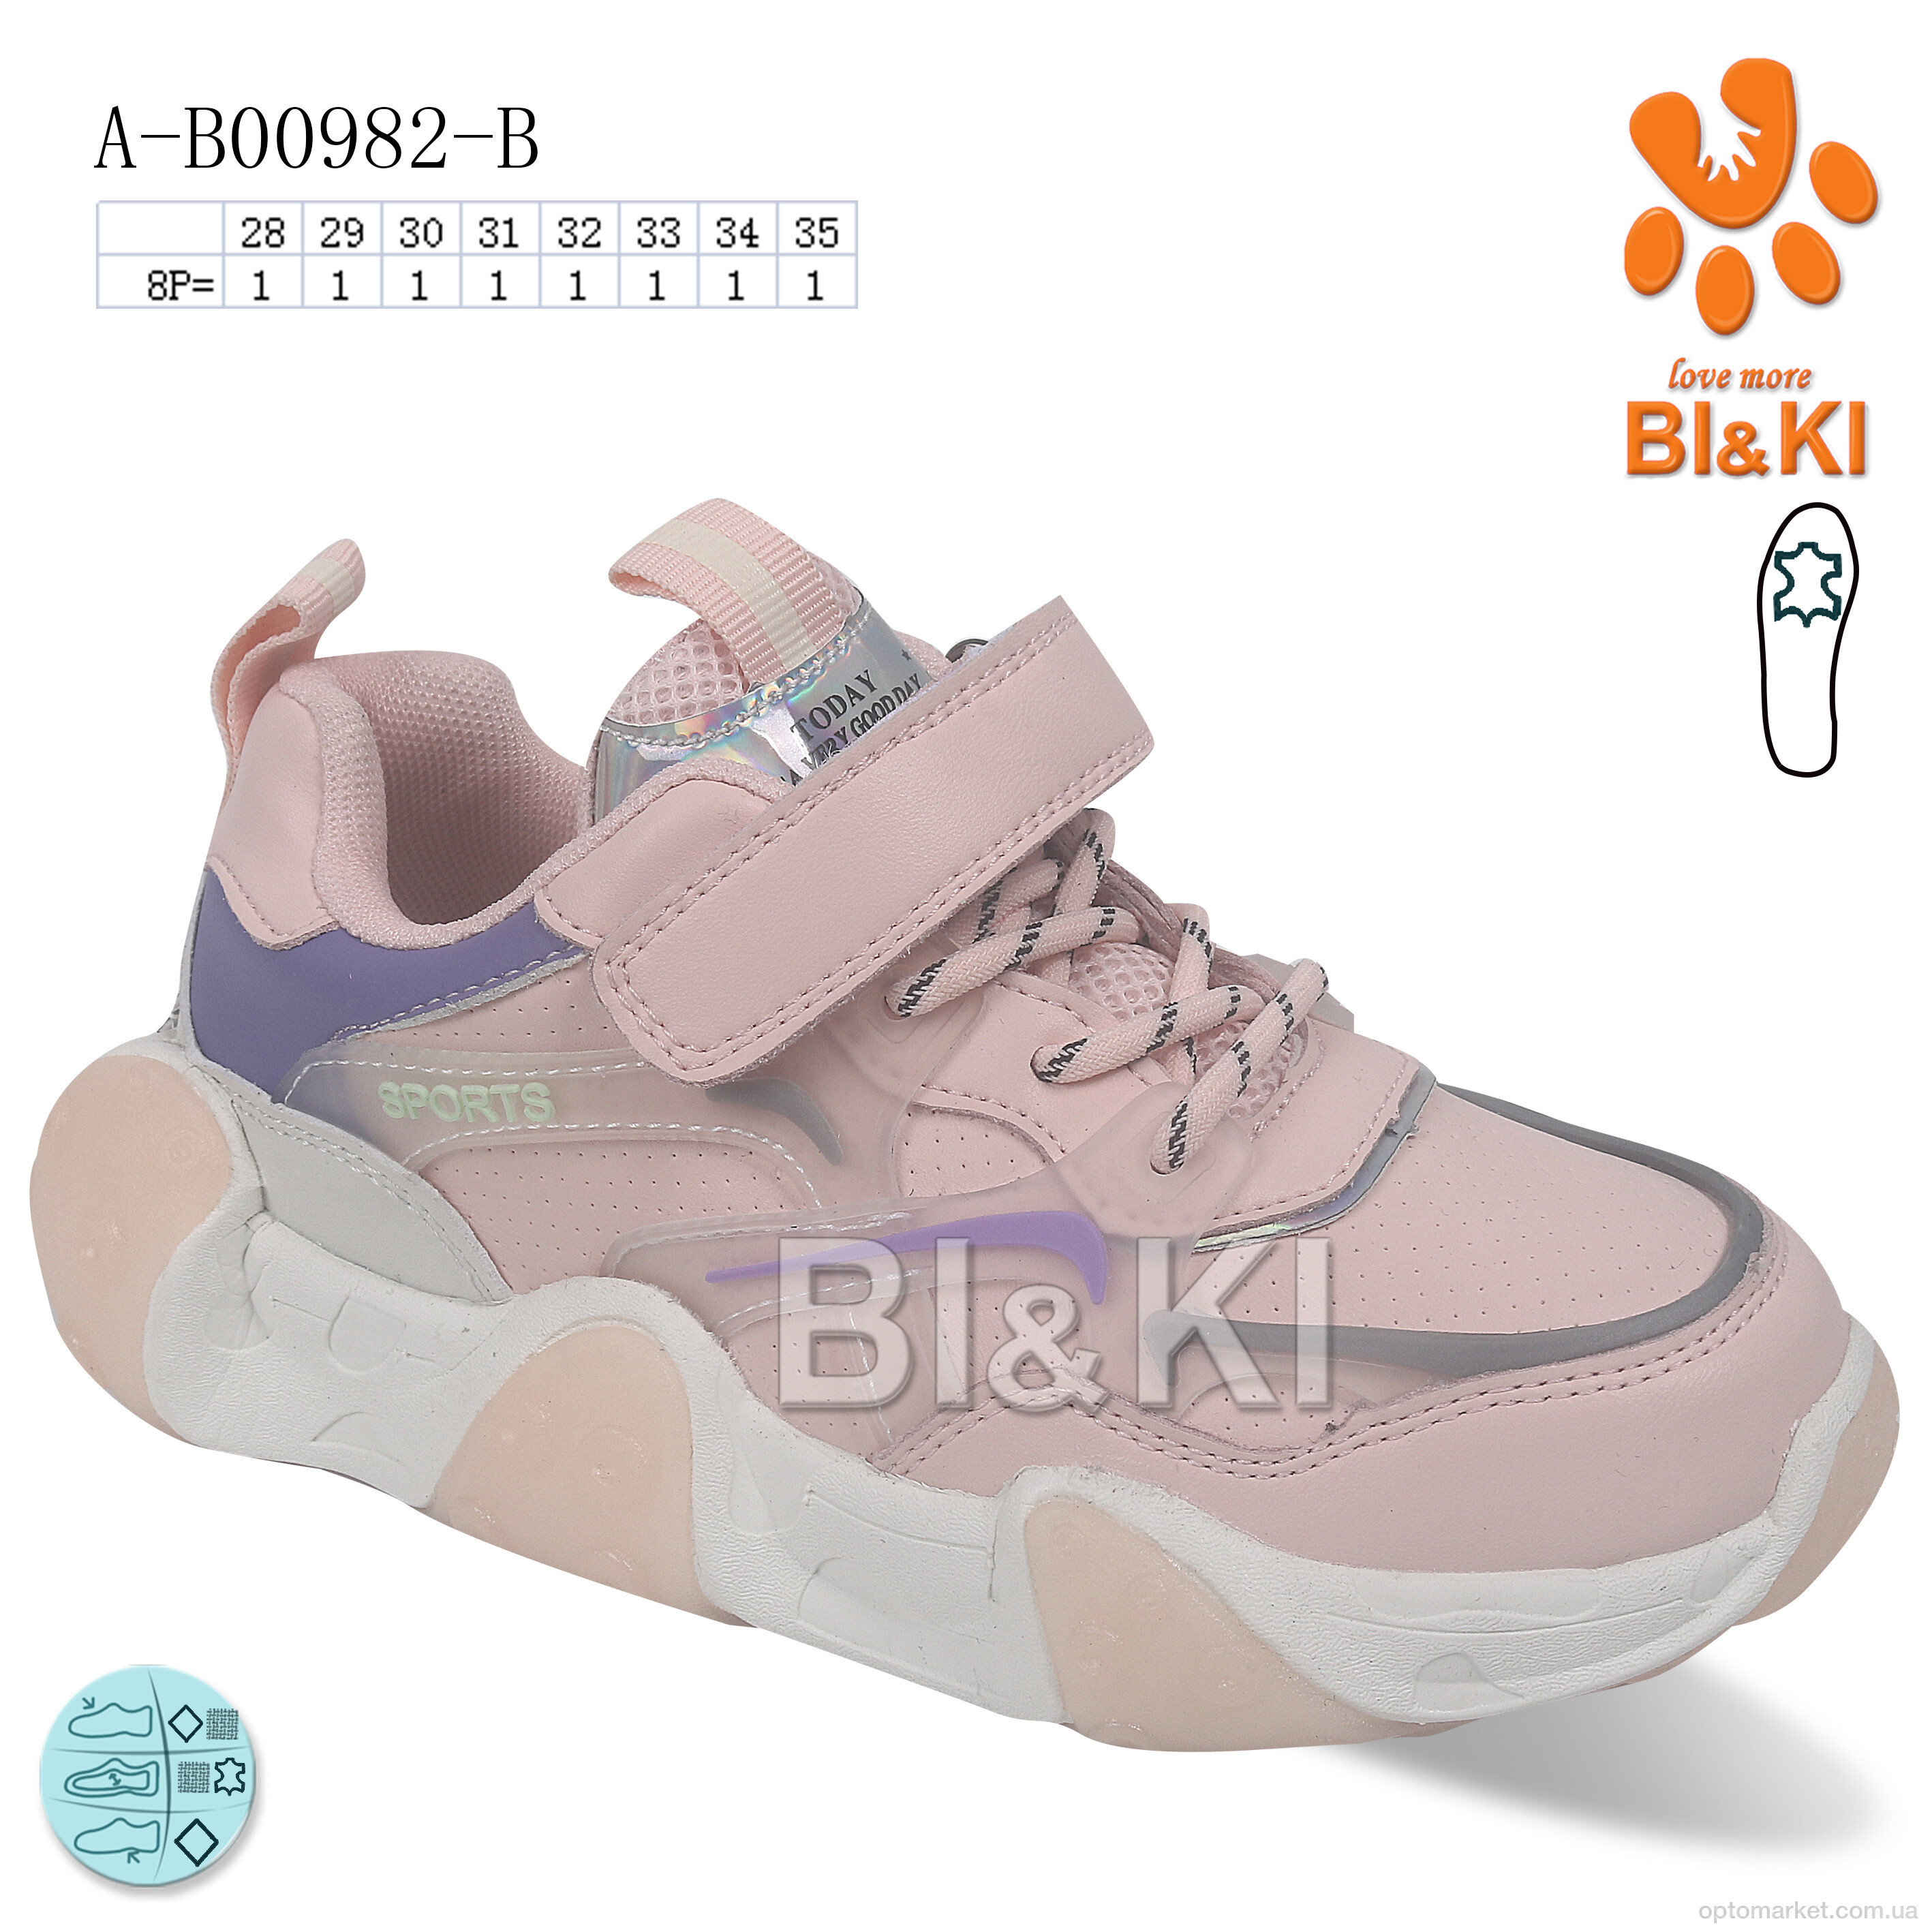 Купить Кросівки дитячі A-B00982-B Bi&Ki рожевий, фото 1